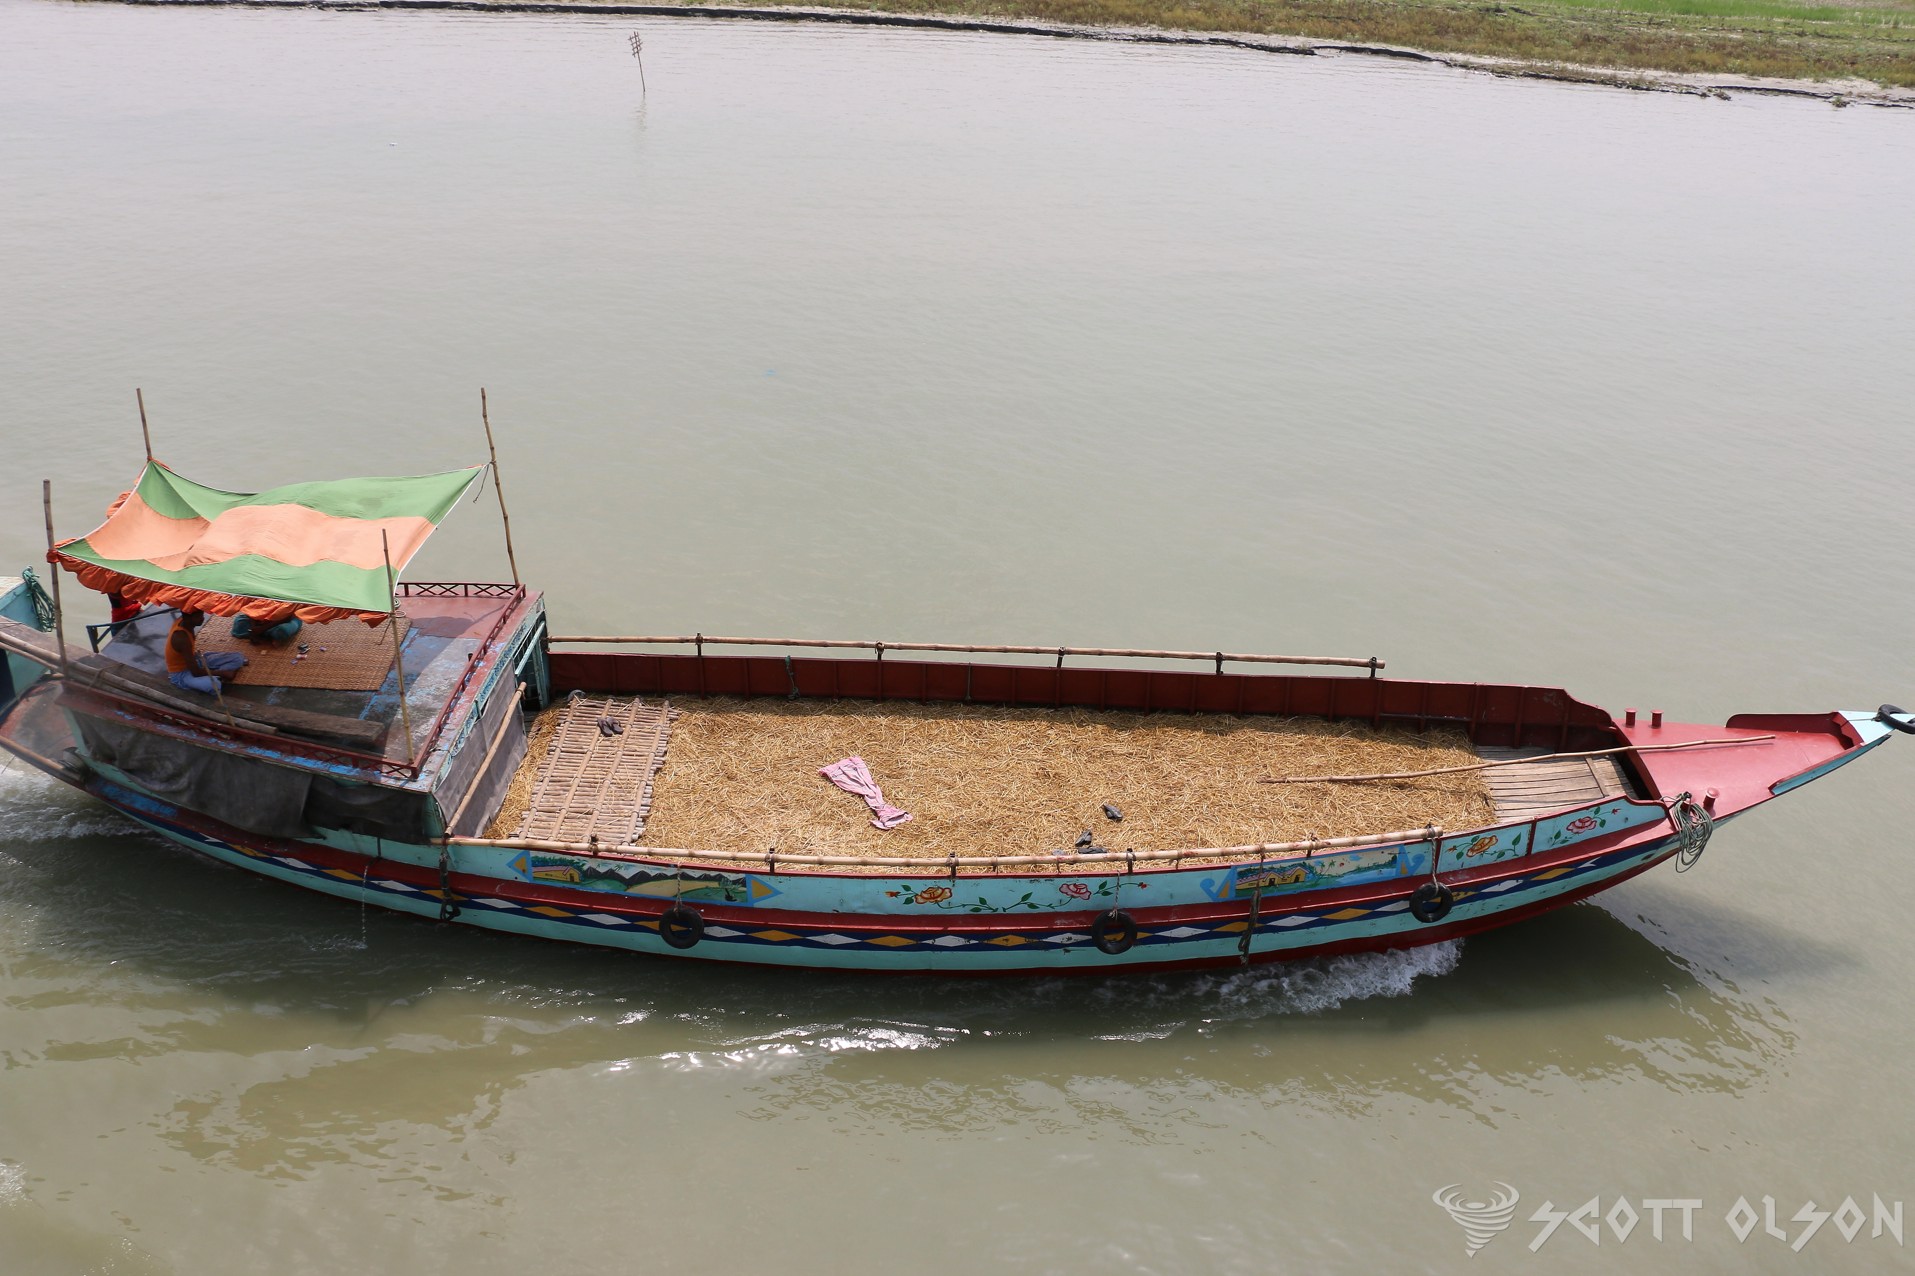 Boat-Padma-River-Bangladesh